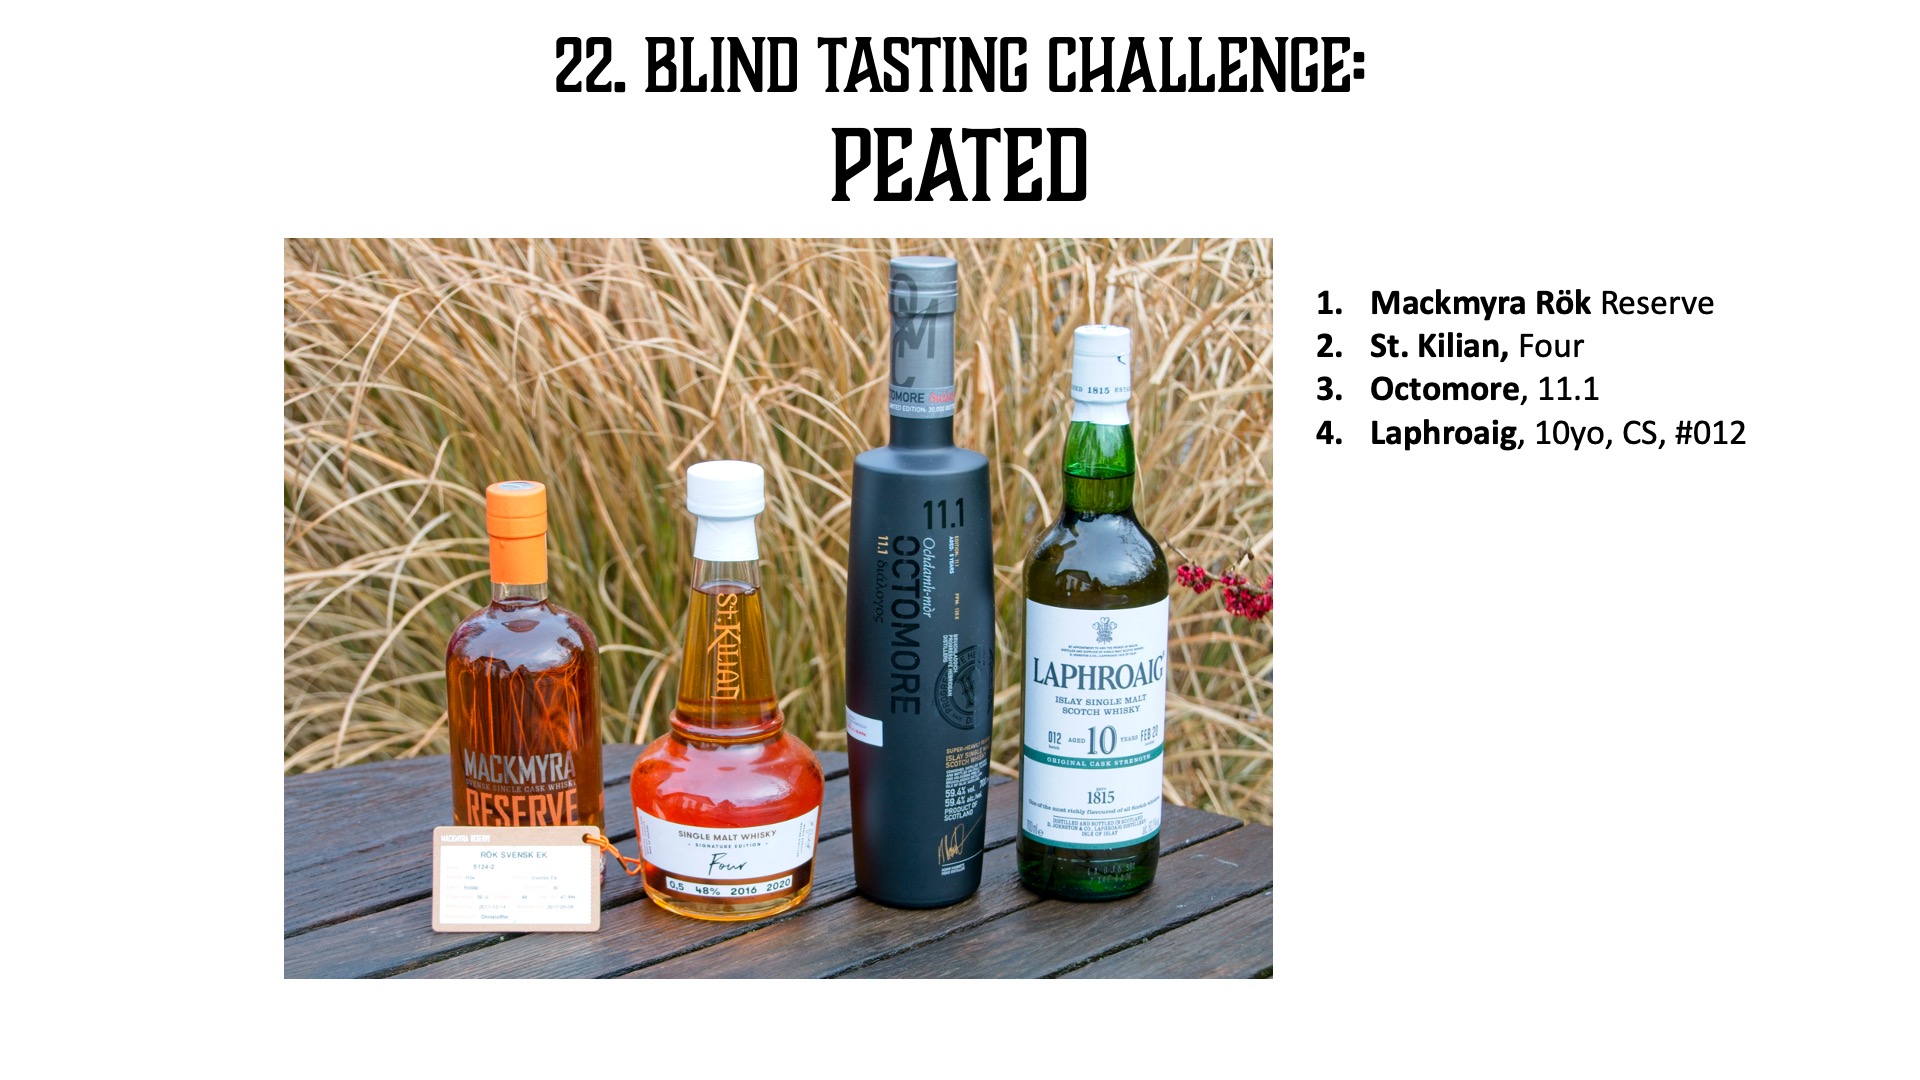 22. Blind der Peaty Whisky? Malt | Challenge – torfigste Friends Single - Tasting of Welcher ist